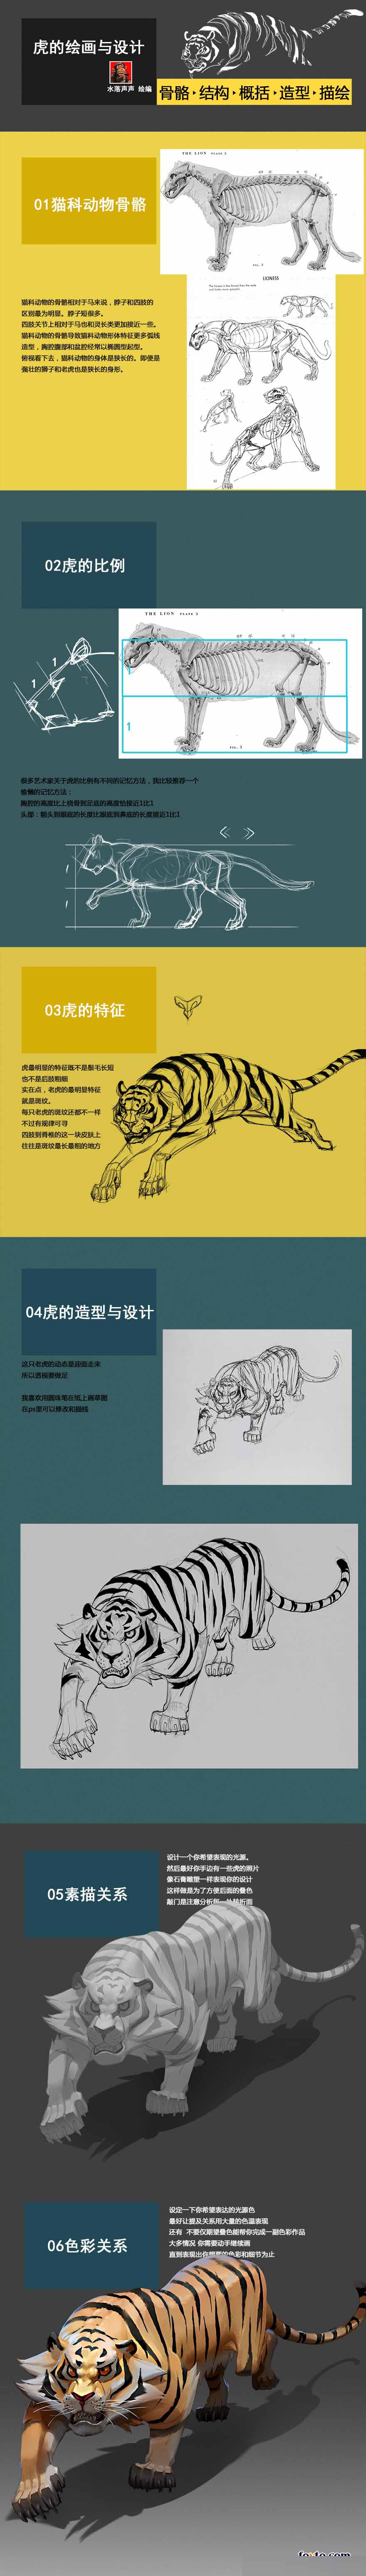 老虎的绘画与设计研究教程1